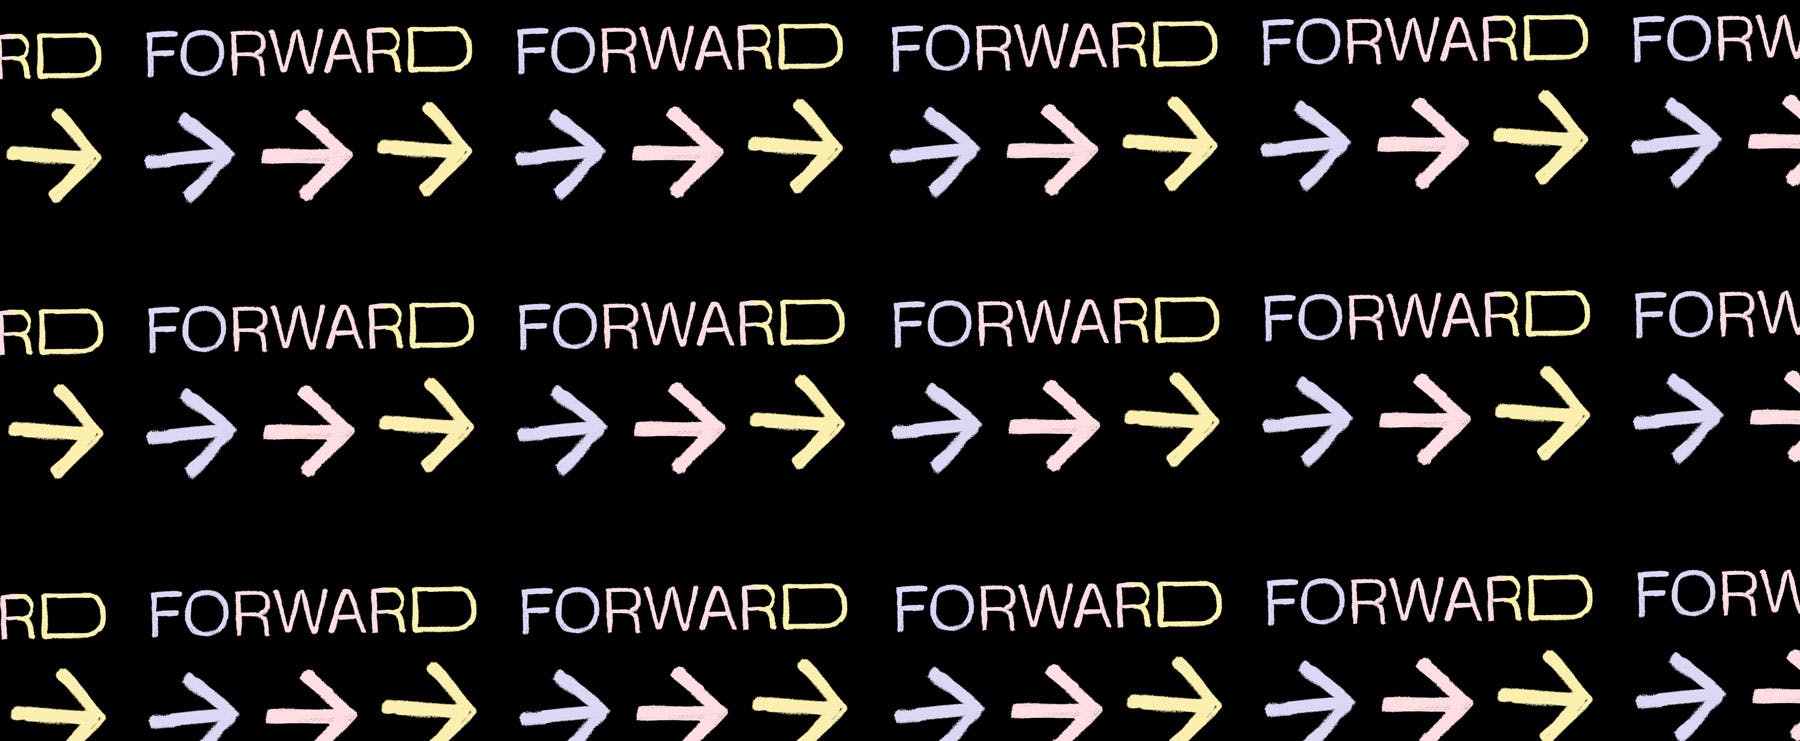 Forward, ein Digital Summit von Pleo